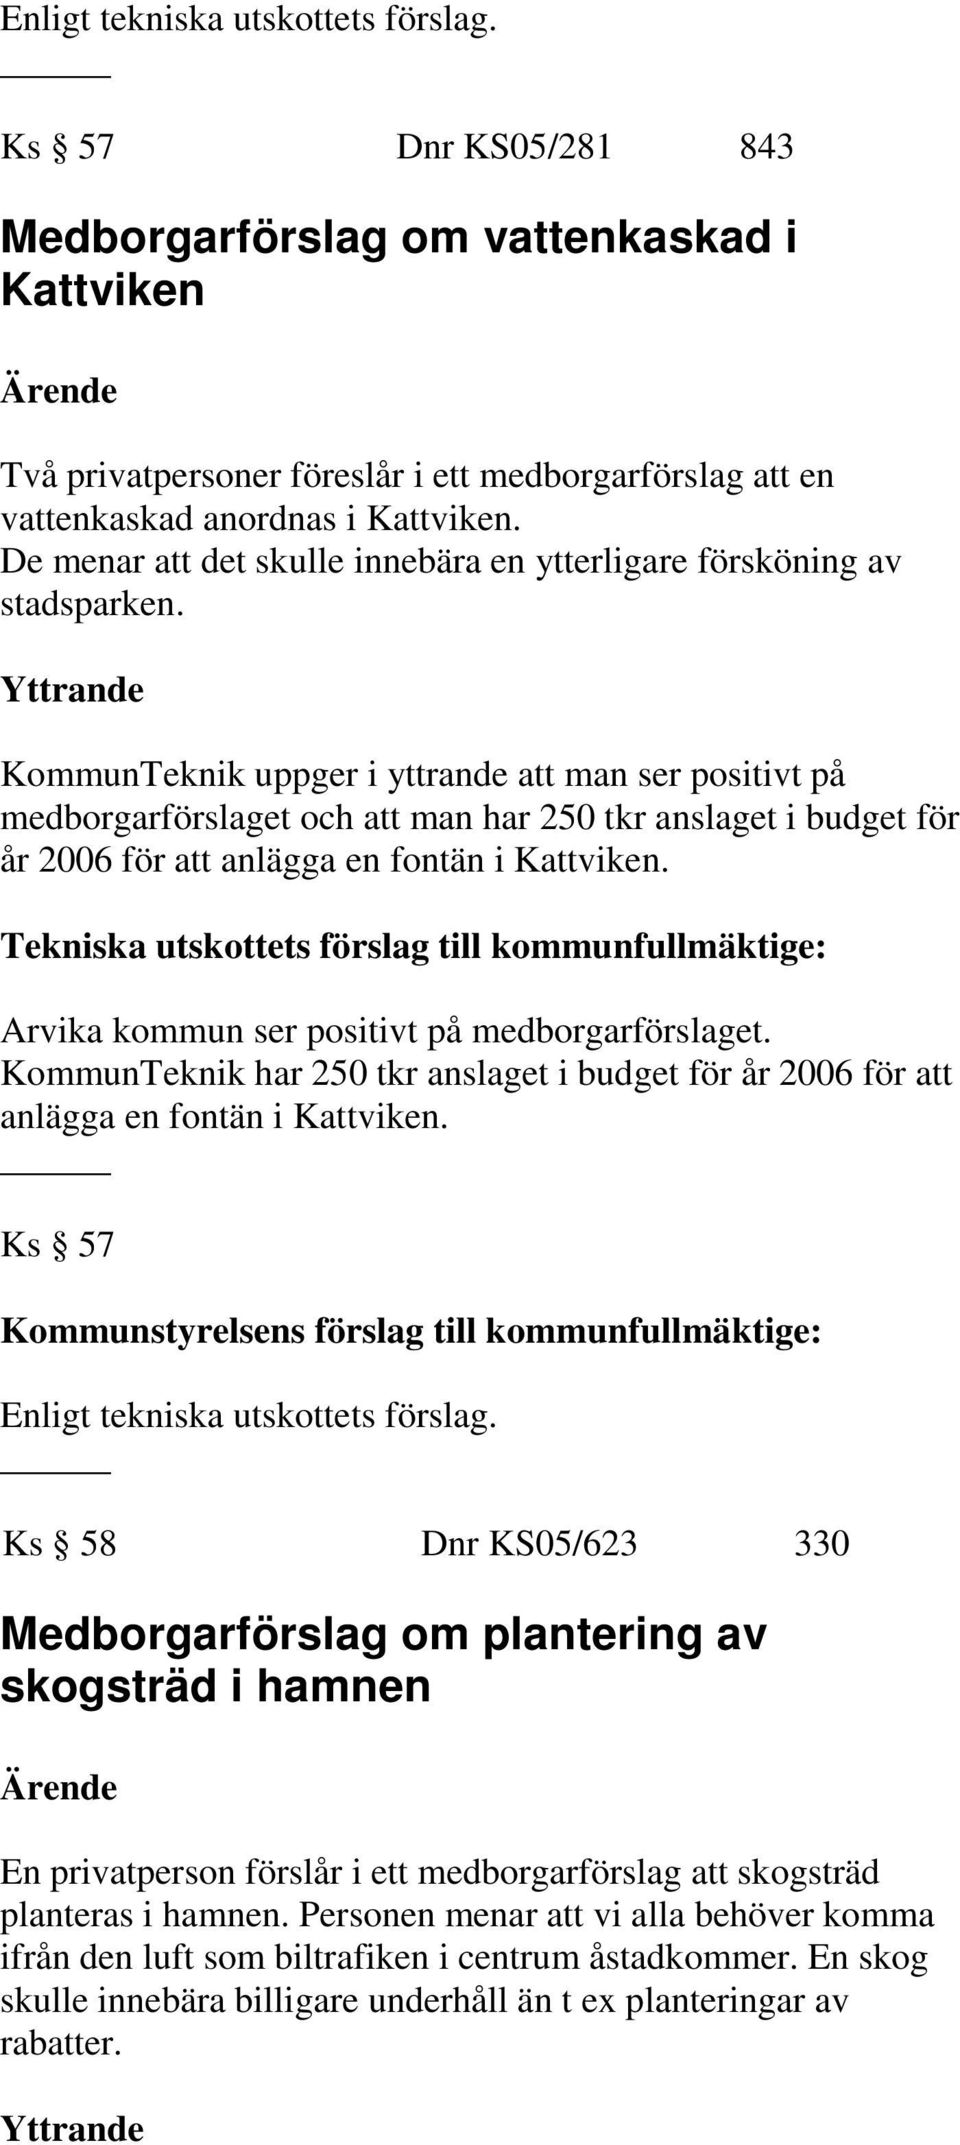 KommunTeknik uppger i yttrande att man ser positivt på medborgarförslaget och att man har 250 tkr anslaget i budget för år 2006 för att anlägga en fontän i Kattviken.